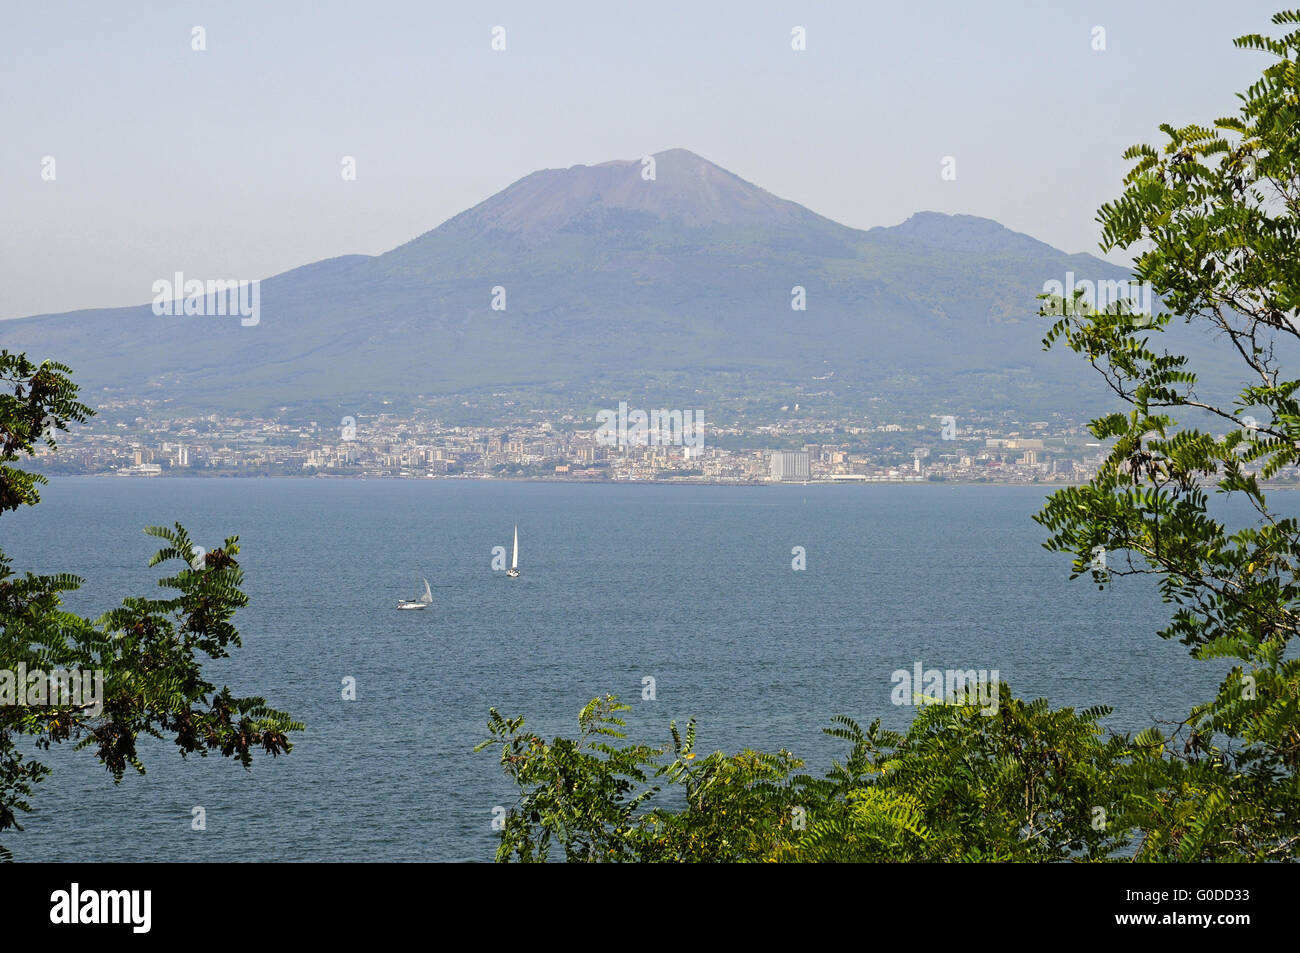 Mount Vesuvius, Bay of Naples, Italy, Europe Stock Photo